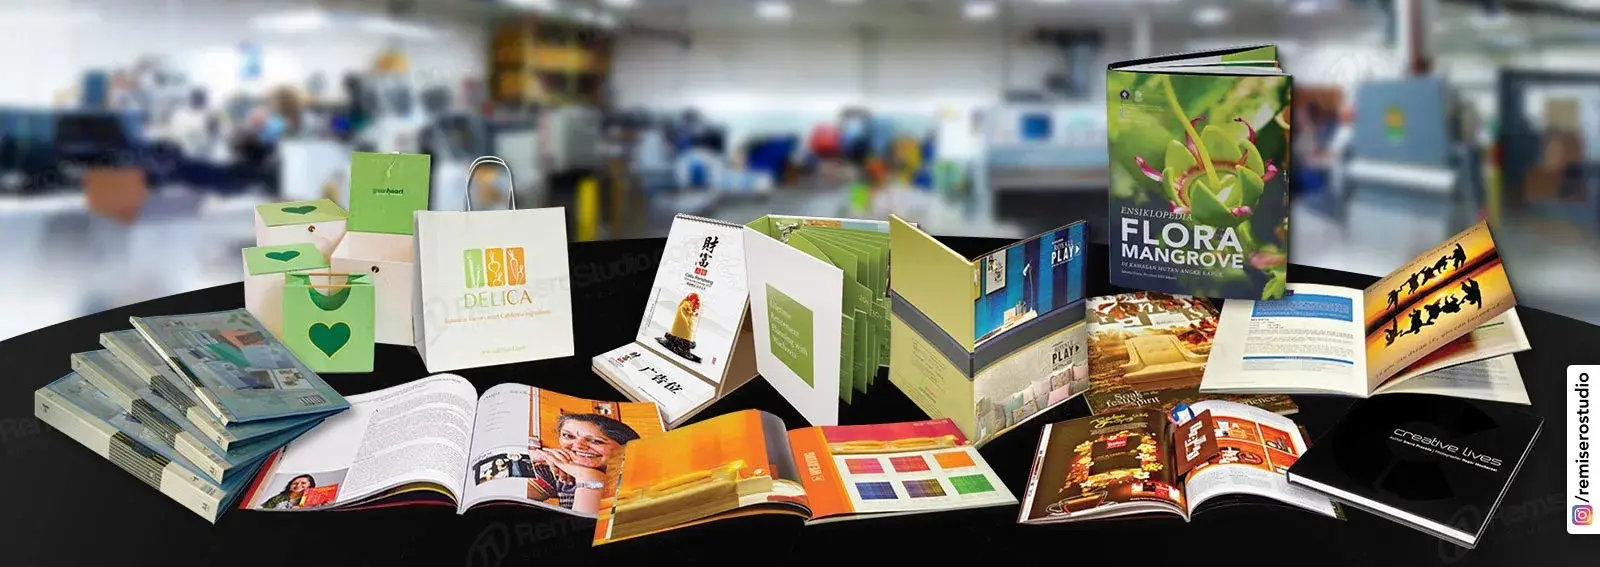 Imprenta Gráfica: Servicio de impresión comercial para empresas en Perú